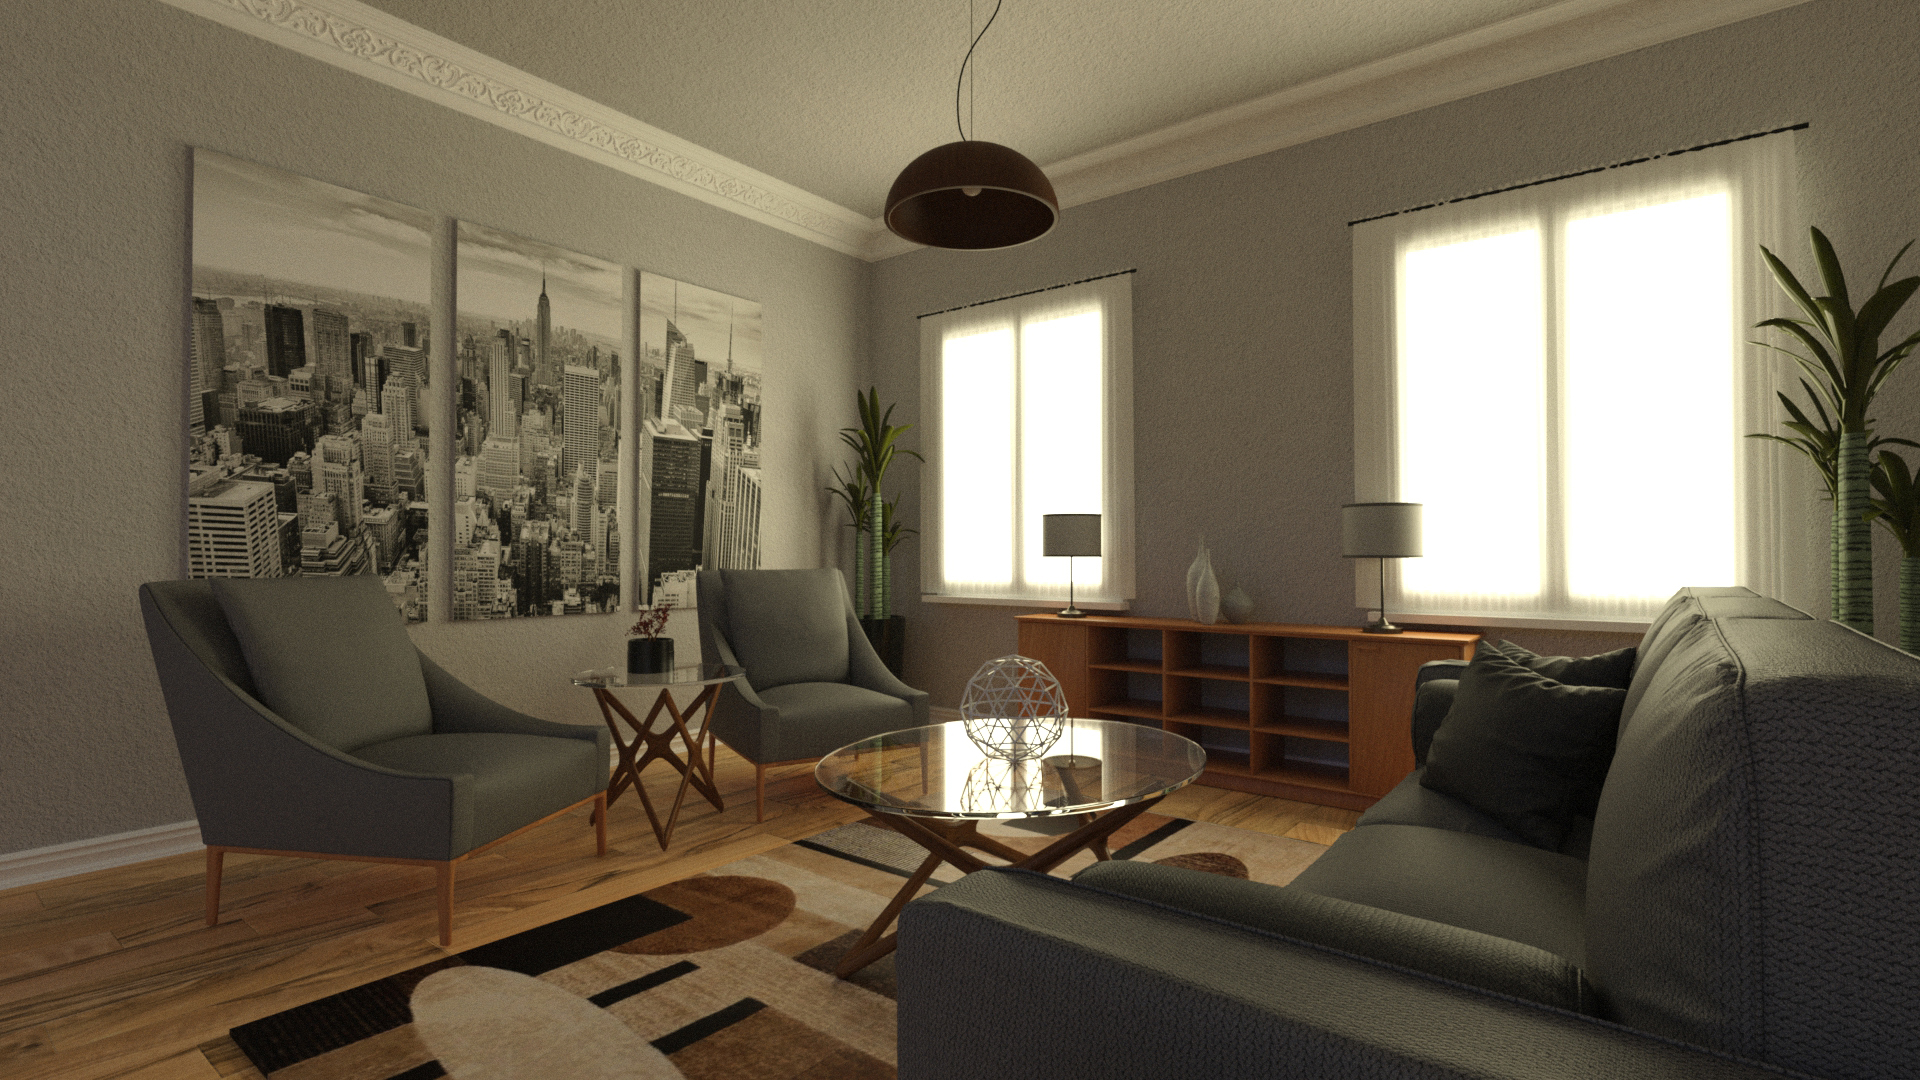 Chestnut Residence by: Illumination, 3D Models by Daz 3D